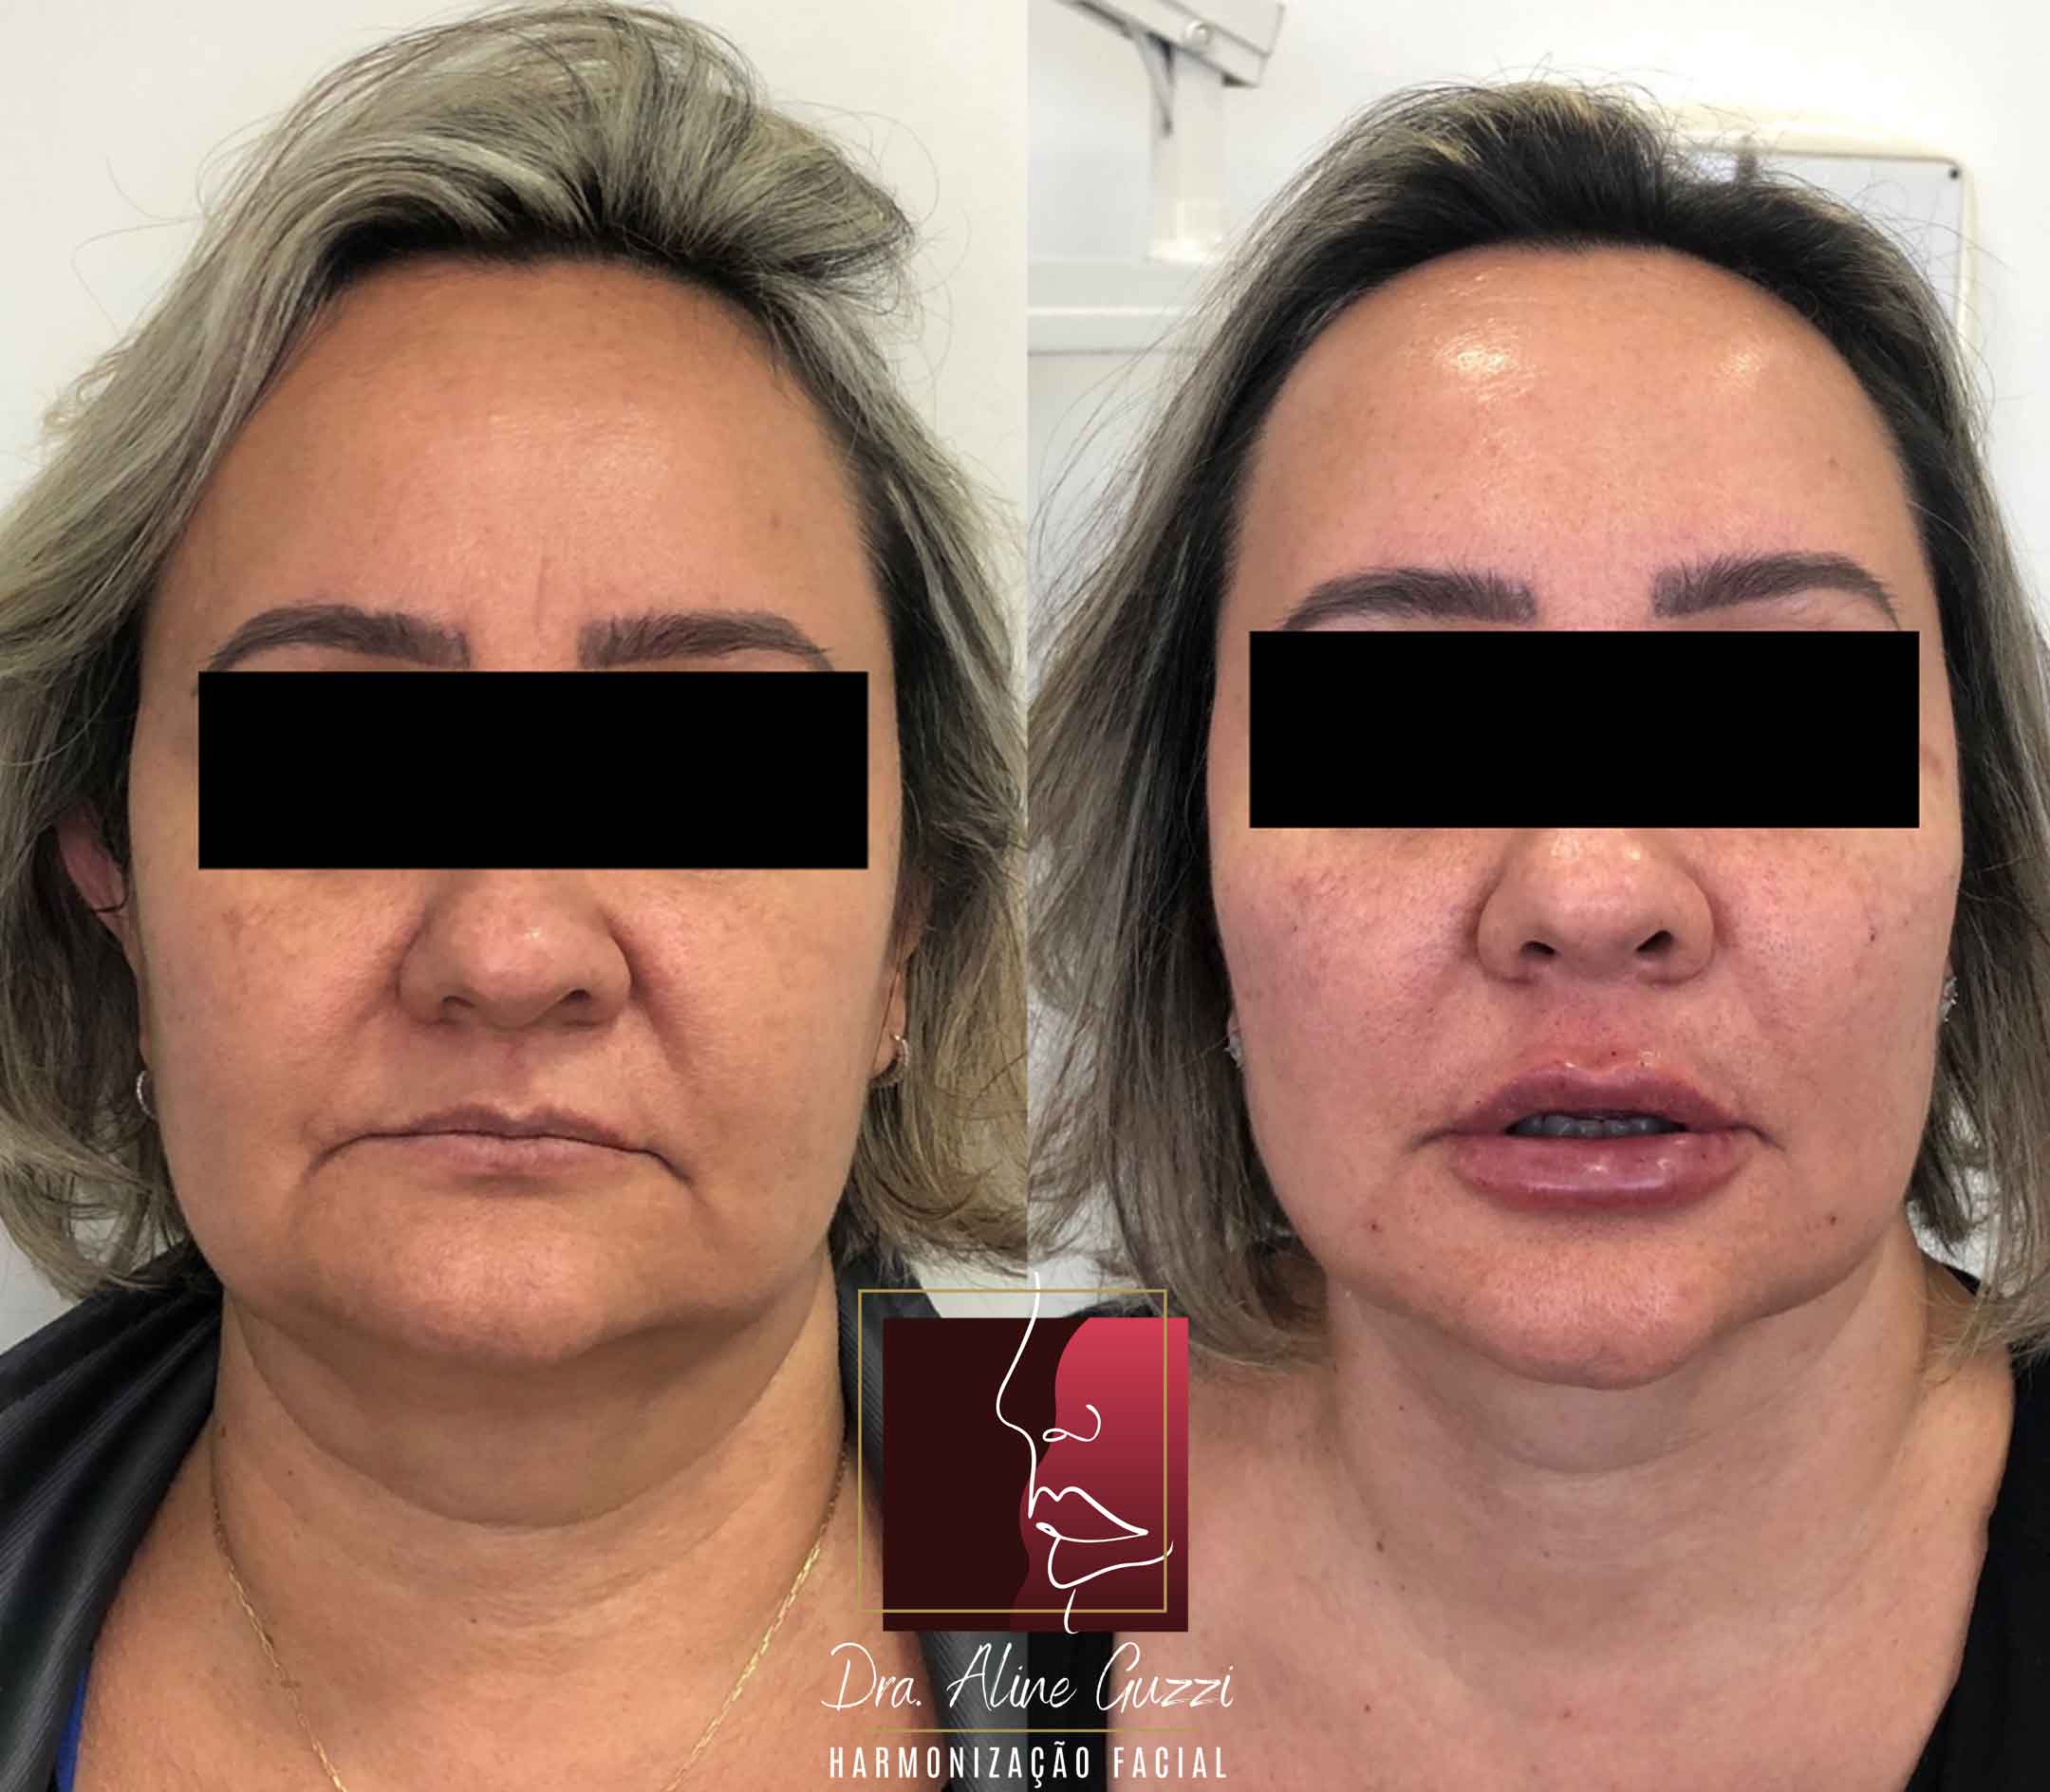 Harmonização Facial - Dra. Aline Guzzi: Caso Clínico de Preenchimento Facial